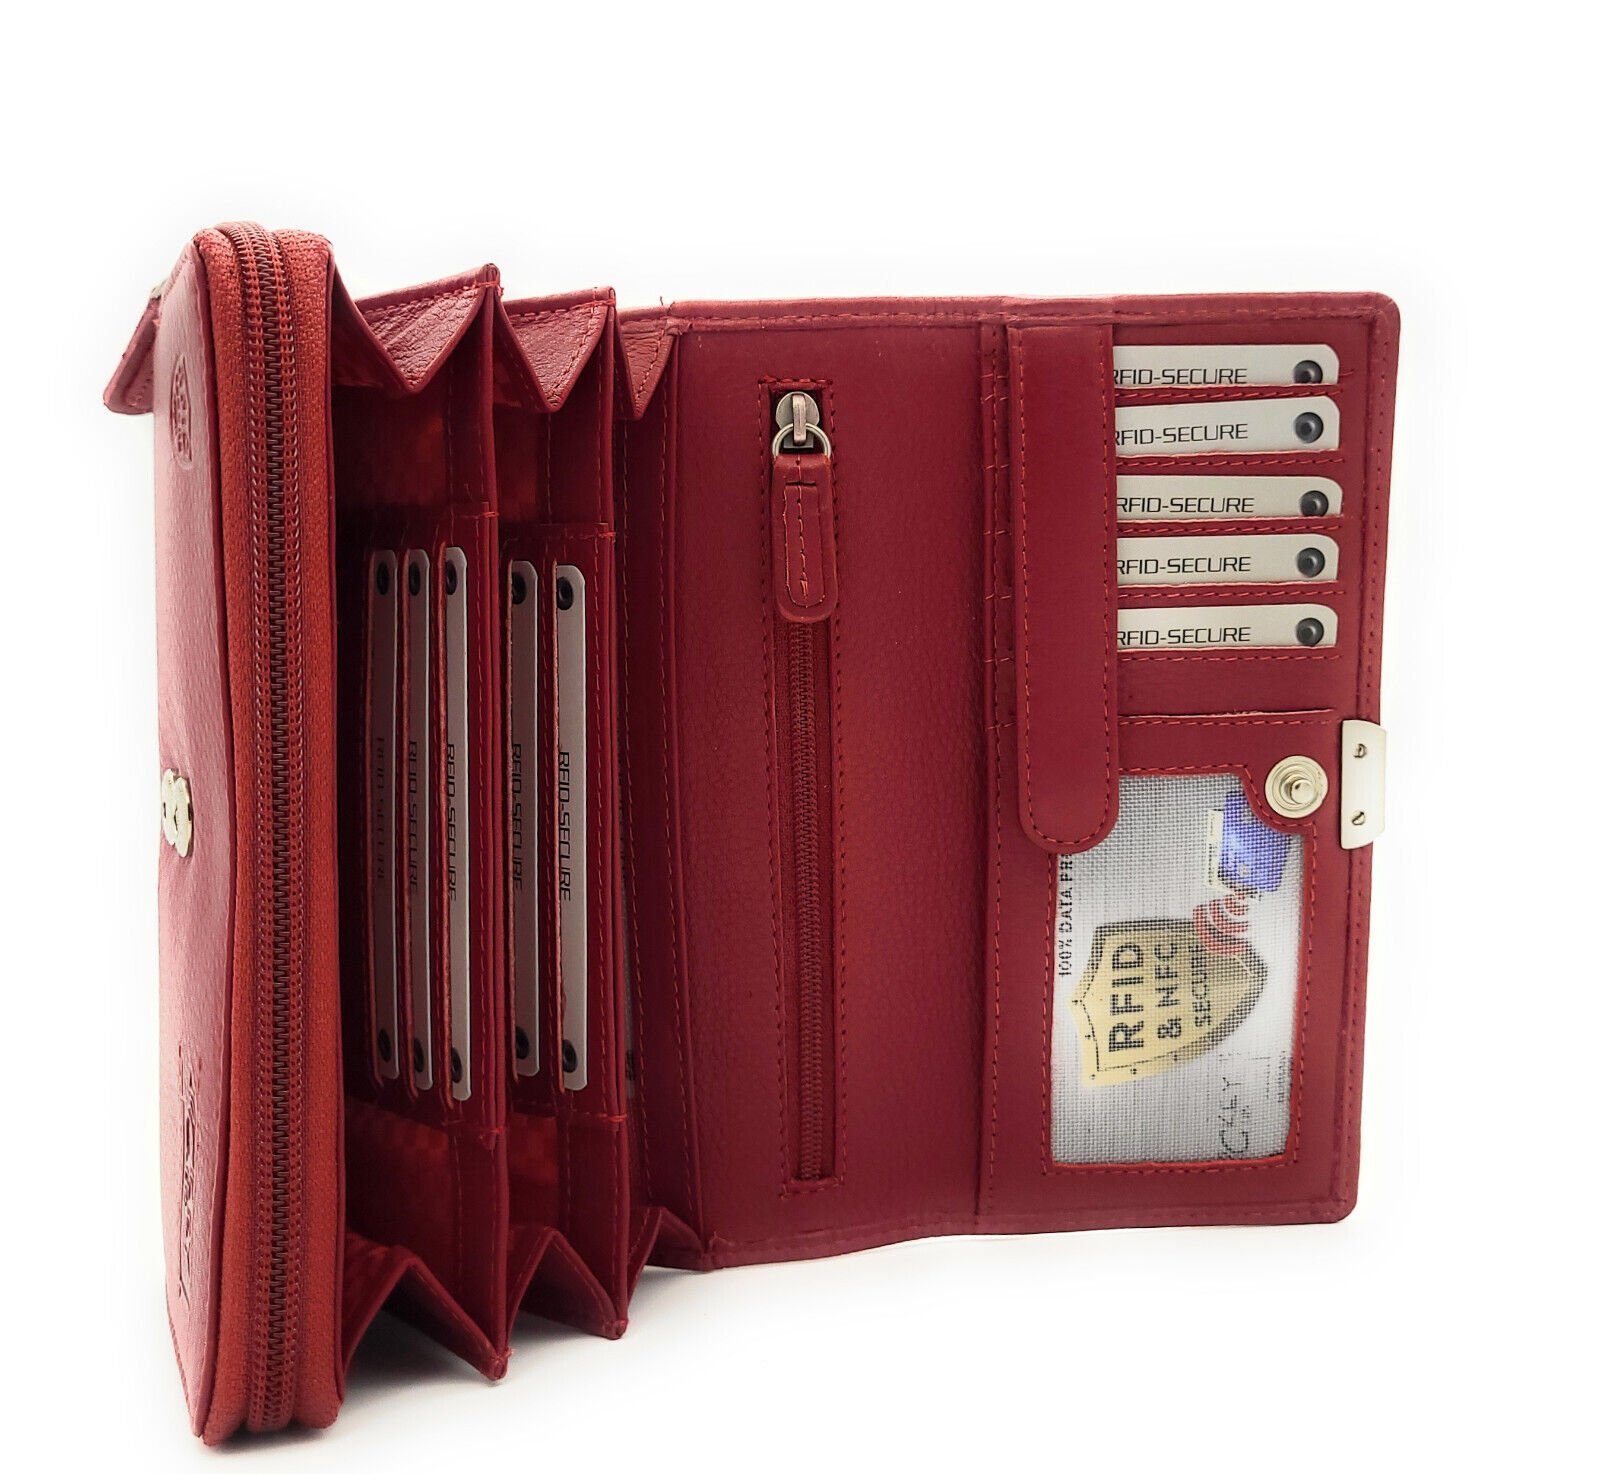 Geldbörse echt Schutz cherry Rindleder, RFID vollnarbiges Portemonnaie weiches "Massala", Leder Damen CLUB JOCKEY mit rot